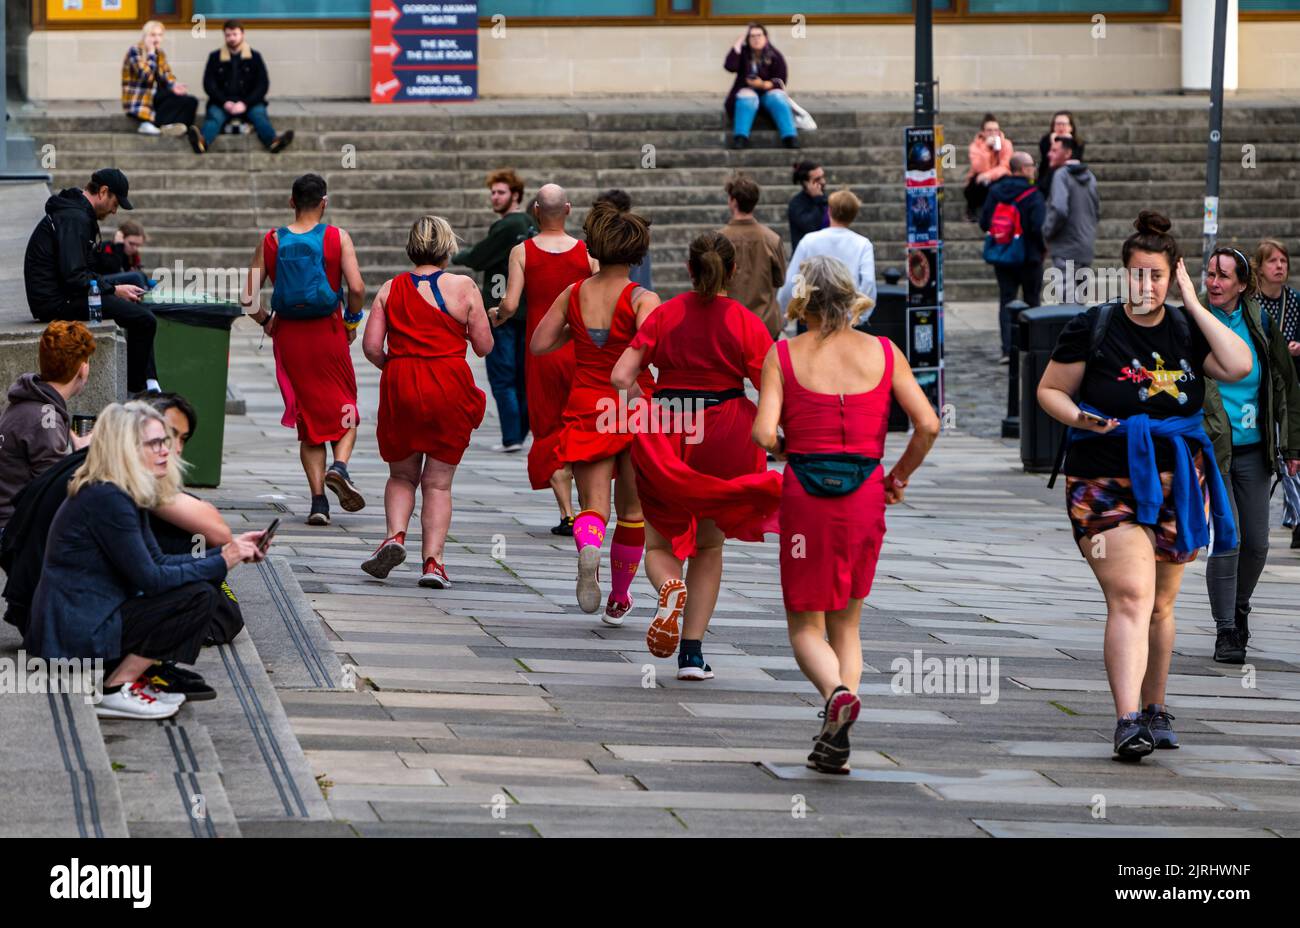 George Square, Edinburgh, Schottland, Großbritannien, 24.. August 2022. Red Dress Run: Die jährliche Veranstaltung findet statt, bei der Läufer in roten Kleidern durch die Stadt laufen, um Geld für wohltätige Zwecke zu sammeln. Kredit: Sally Anderson/Alamy Live Nachrichten Stockfoto